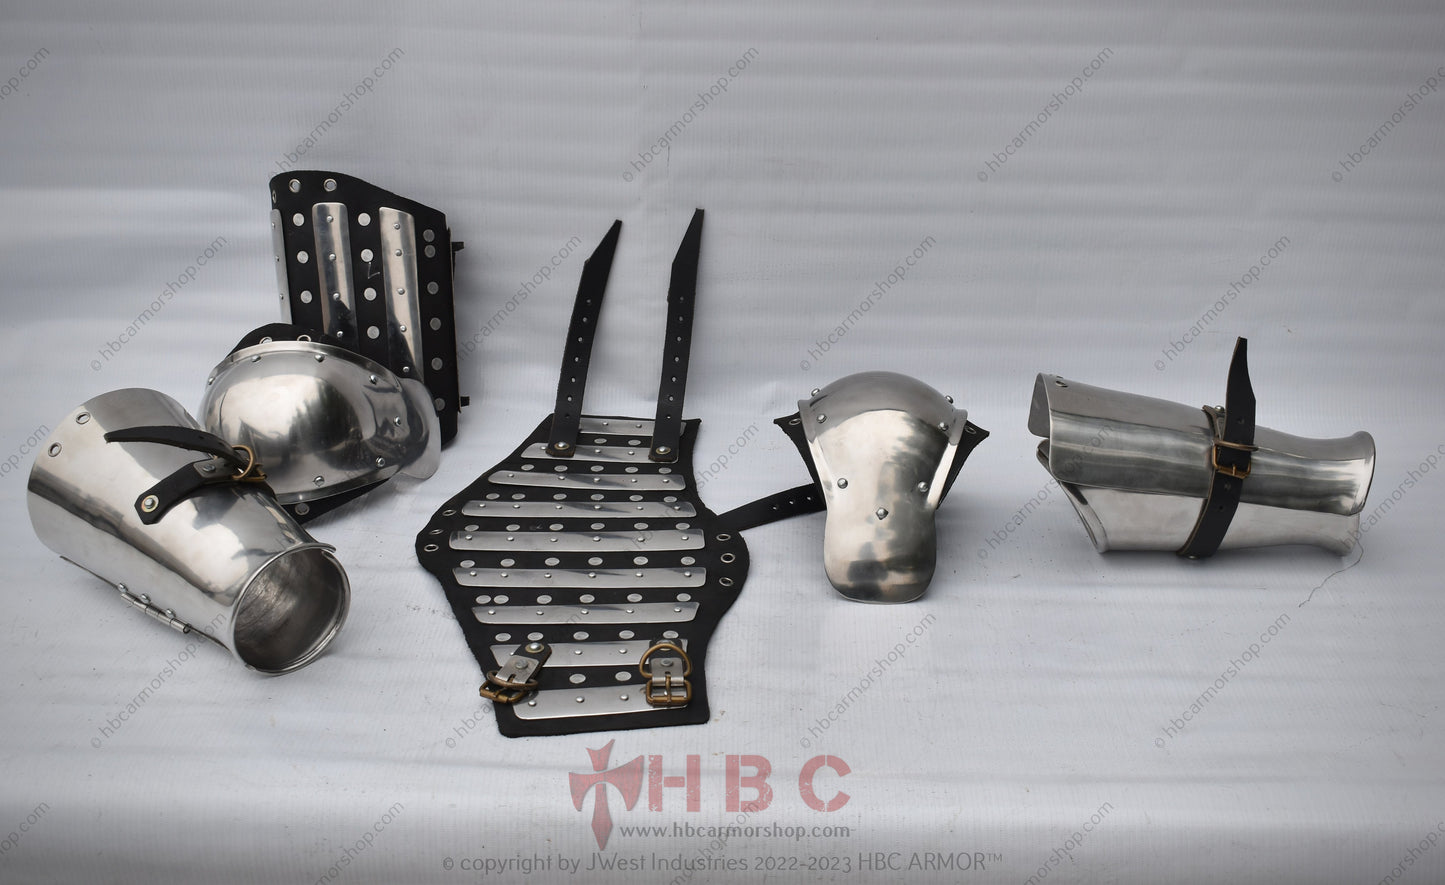 Conjunto de armadura de brazos Buhurt de combate medieval forjado a mano con bíceps entablillado y cubierta completa